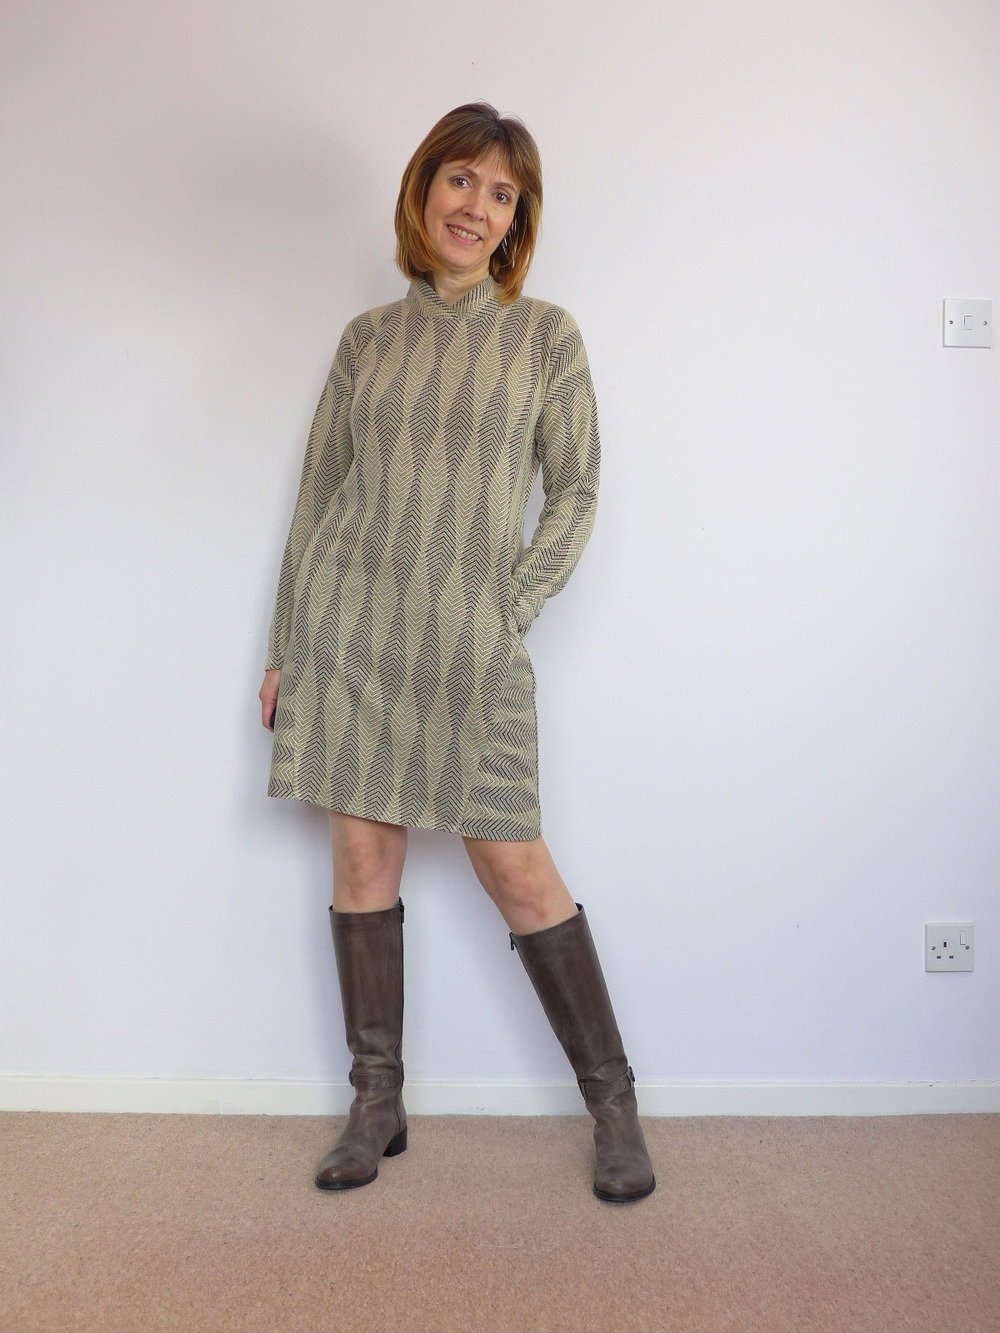 Lekala patterns sweater dress